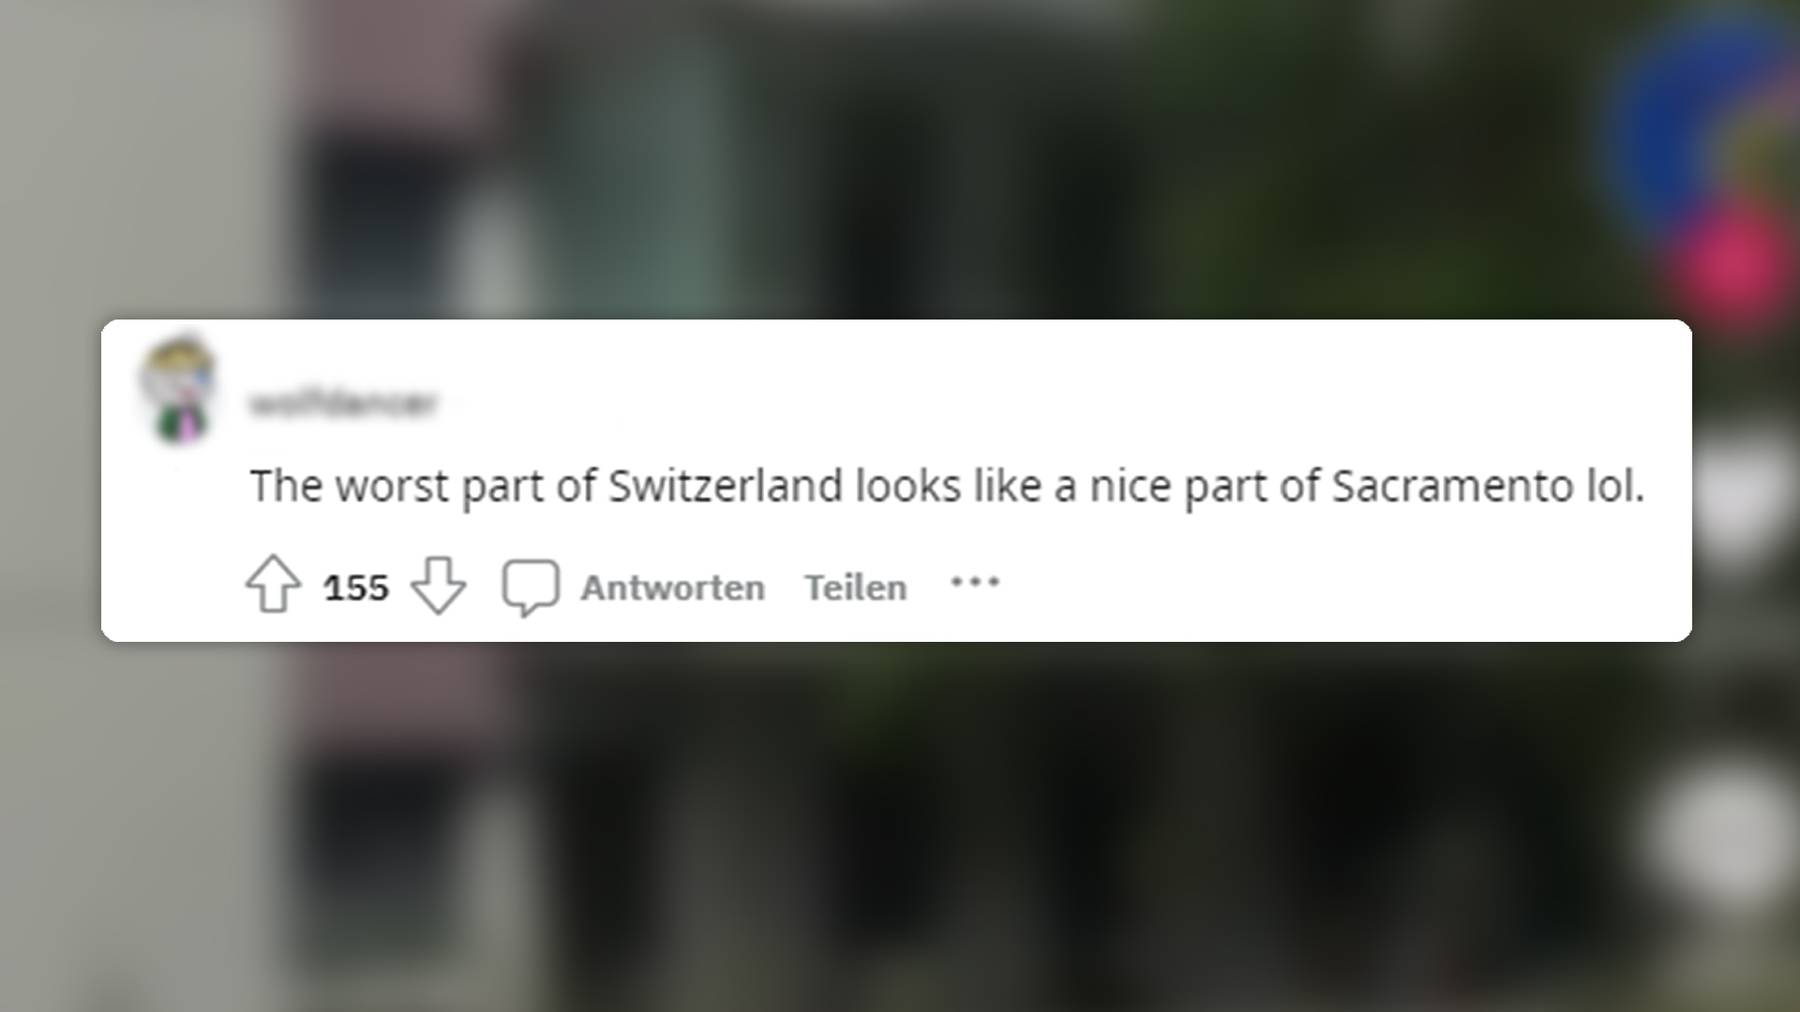 Kommentar 2 zur dunklen Seite von St.Gallen